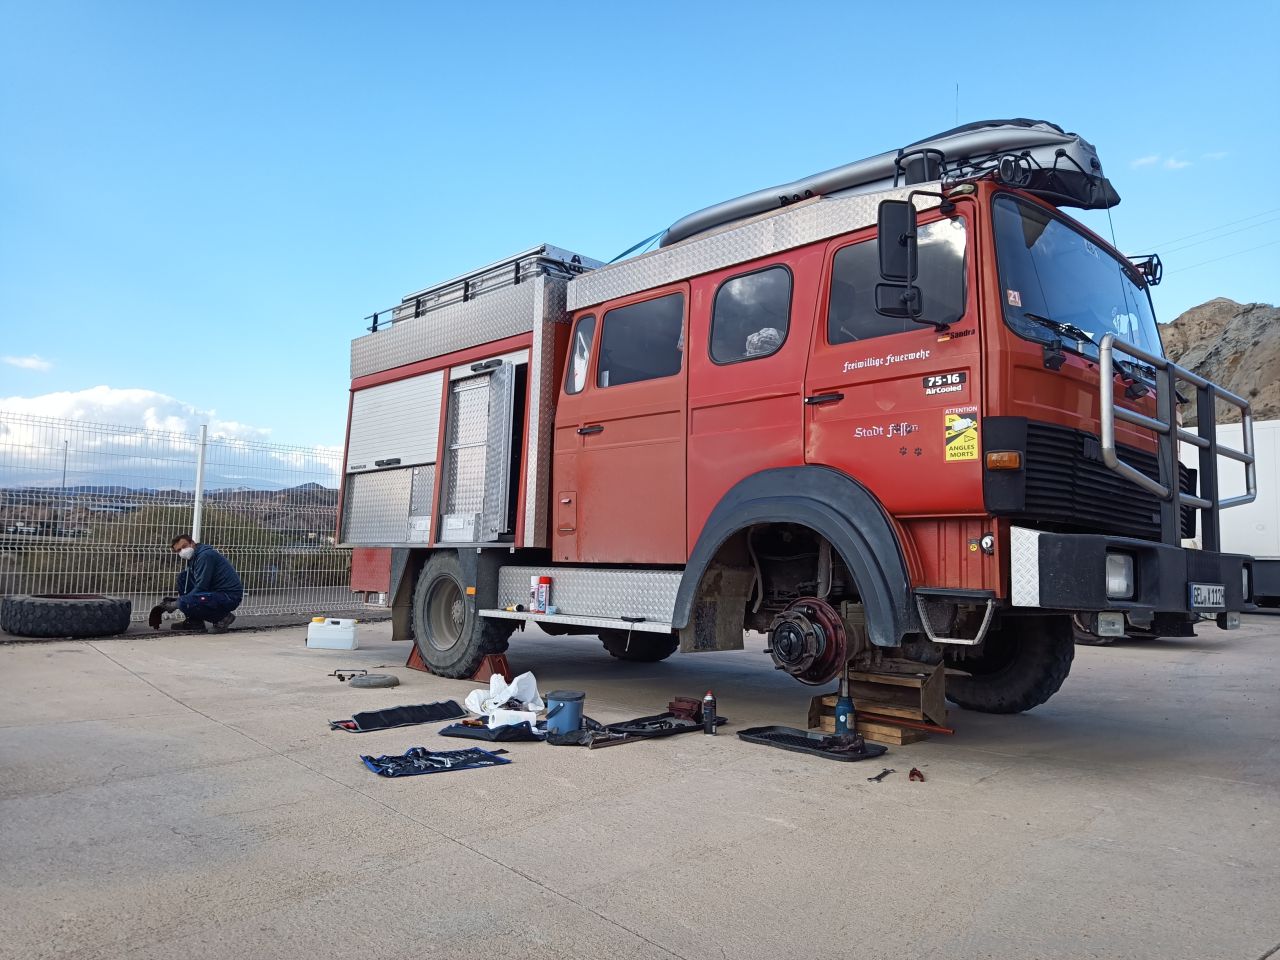 Reparatur des Bremszylinders vor einer Werkstatt in Rioja